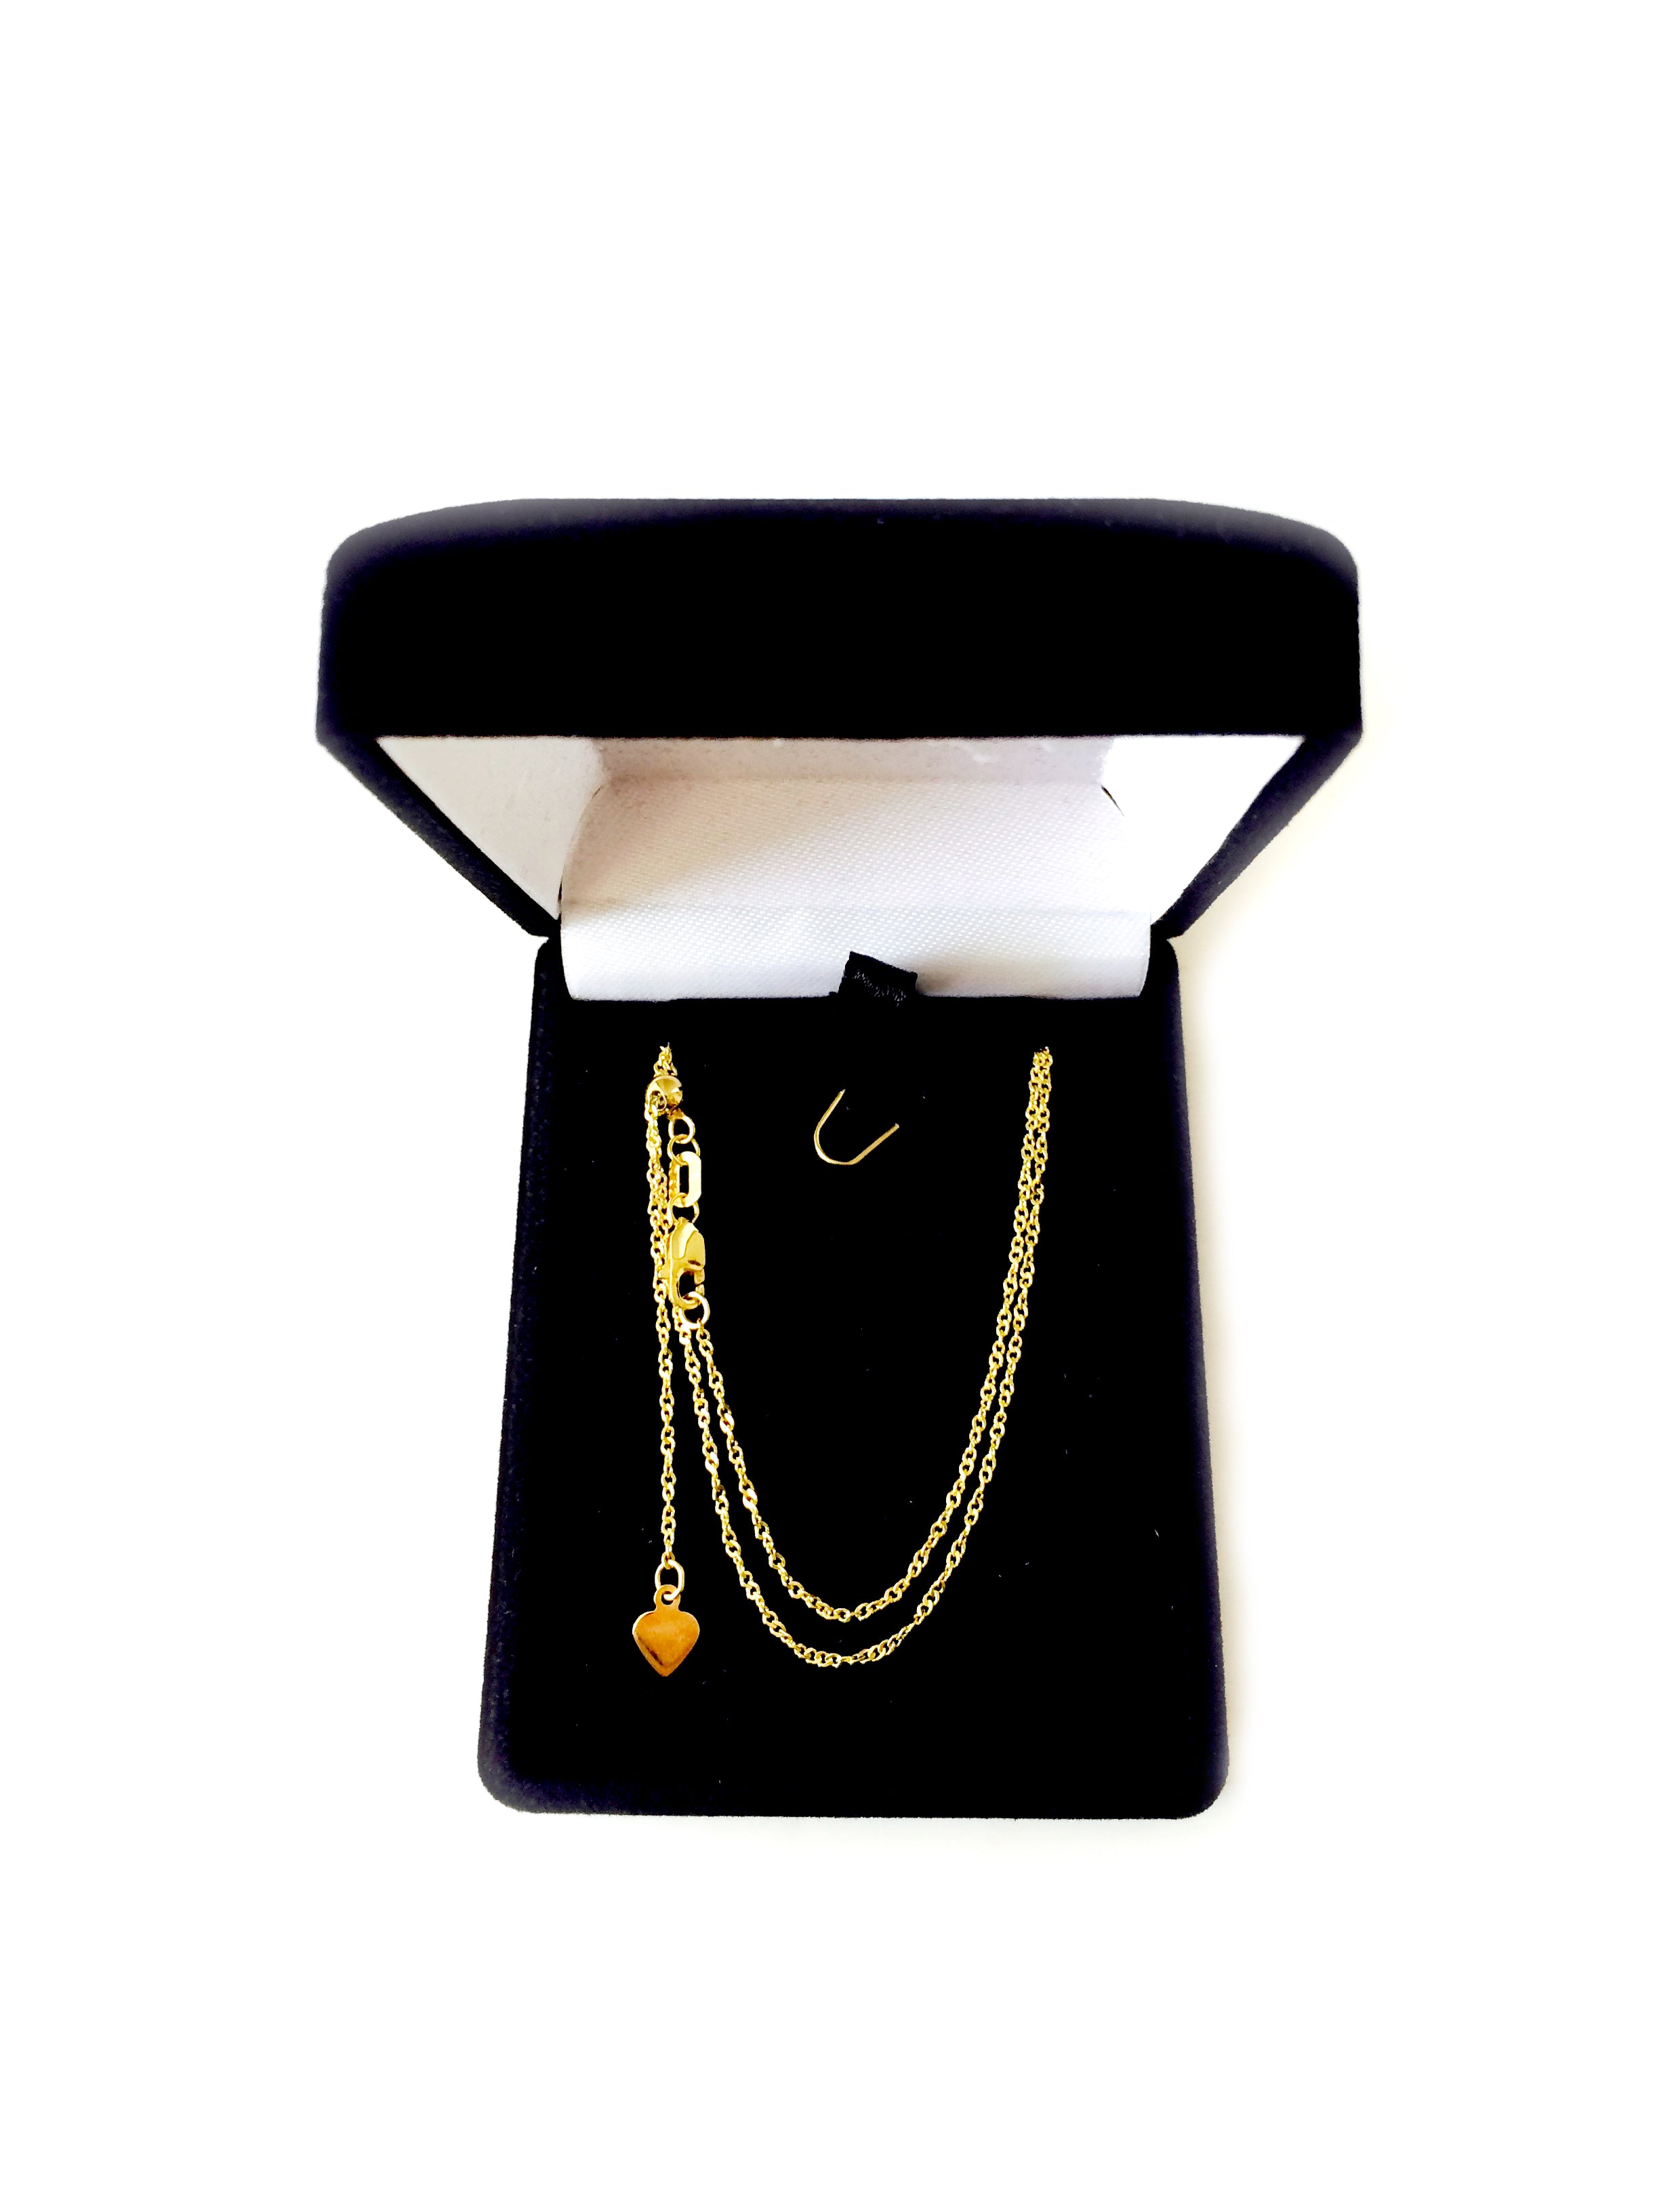 Collier chaîne à maillons réglable en or jaune 14 carats, 1,15 mm, 22 po, bijoux de créateurs fins pour hommes et femmes